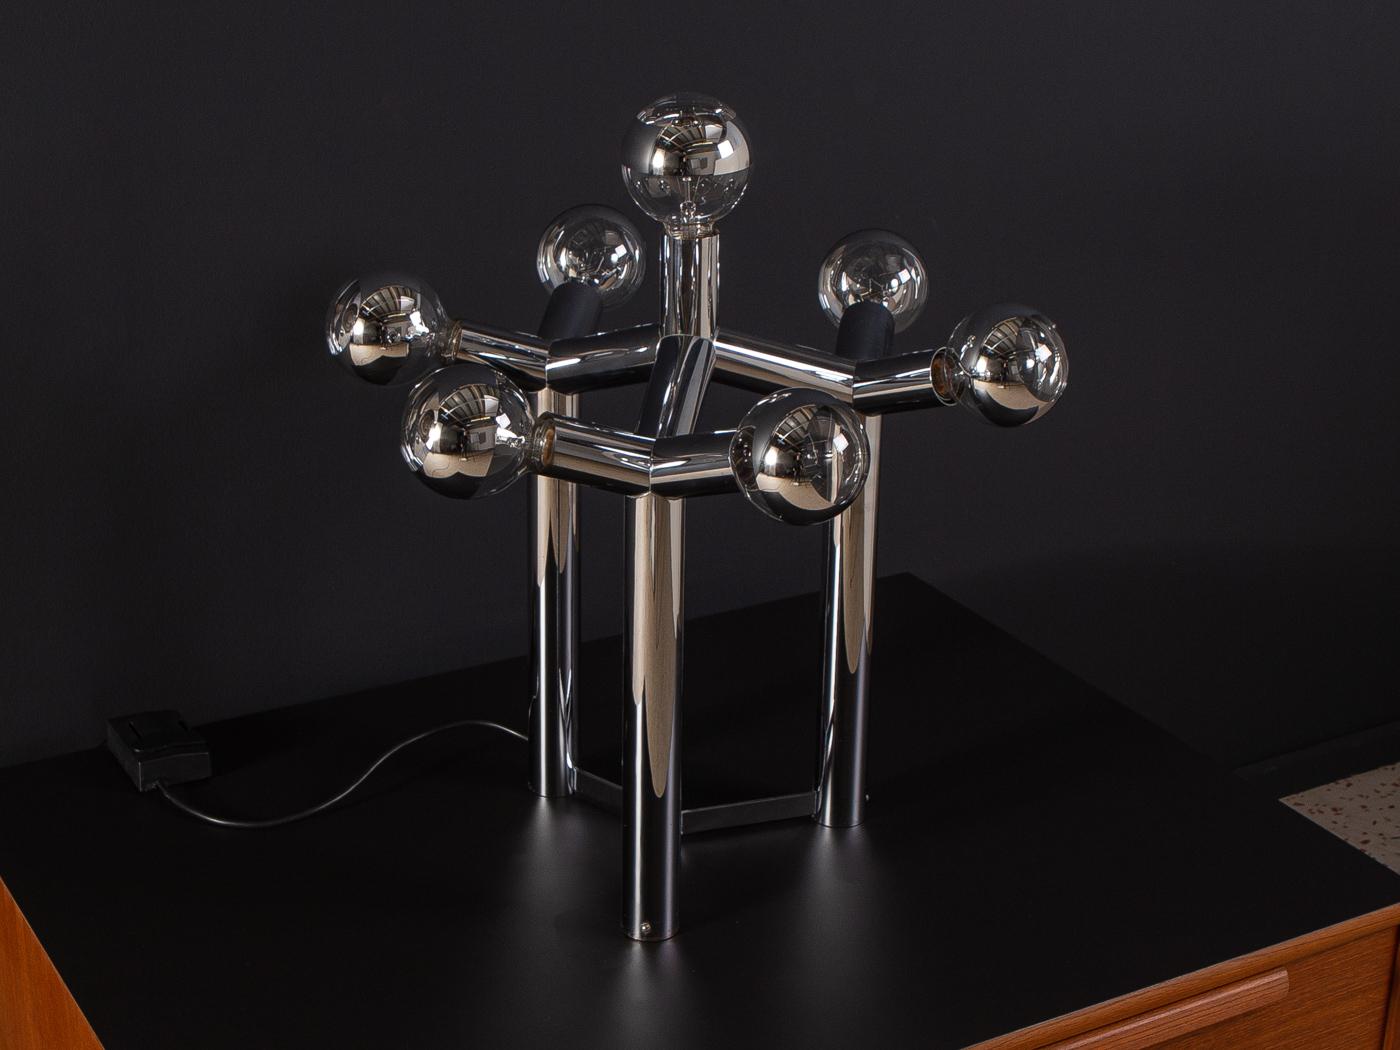 Sehr seltene atomare Tischlampe aus den 1970er Jahren. Dieser Designklassiker von J.T. Kalmar/Wien erinnert an ein Atommolekül. Die Lampe ist mit 7 Globe-Glühbirnen (E27) ausgestattet und kann über einen Dimmer in der Helligkeit reguliert werden.